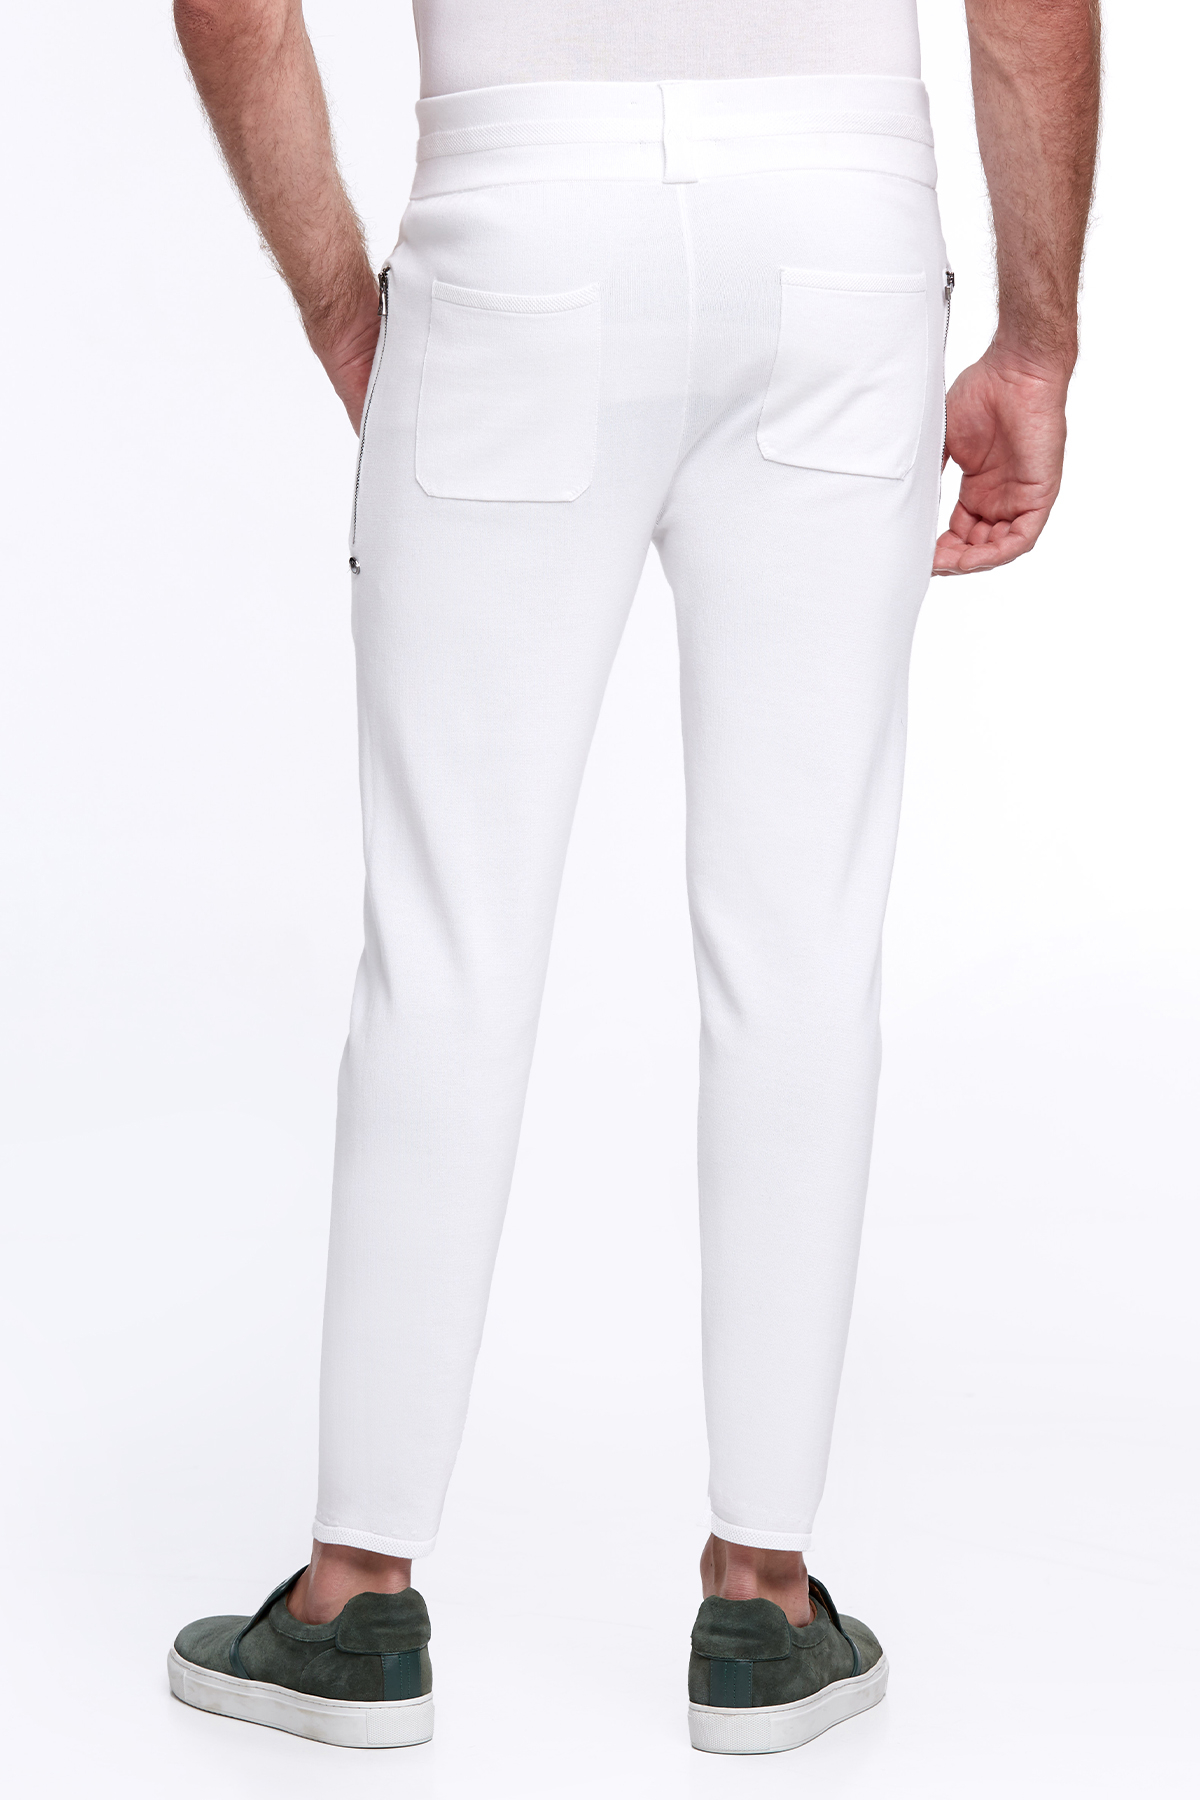 Nakış Logolu Bağcıklı Kırık Beyaz Triko Pantolon